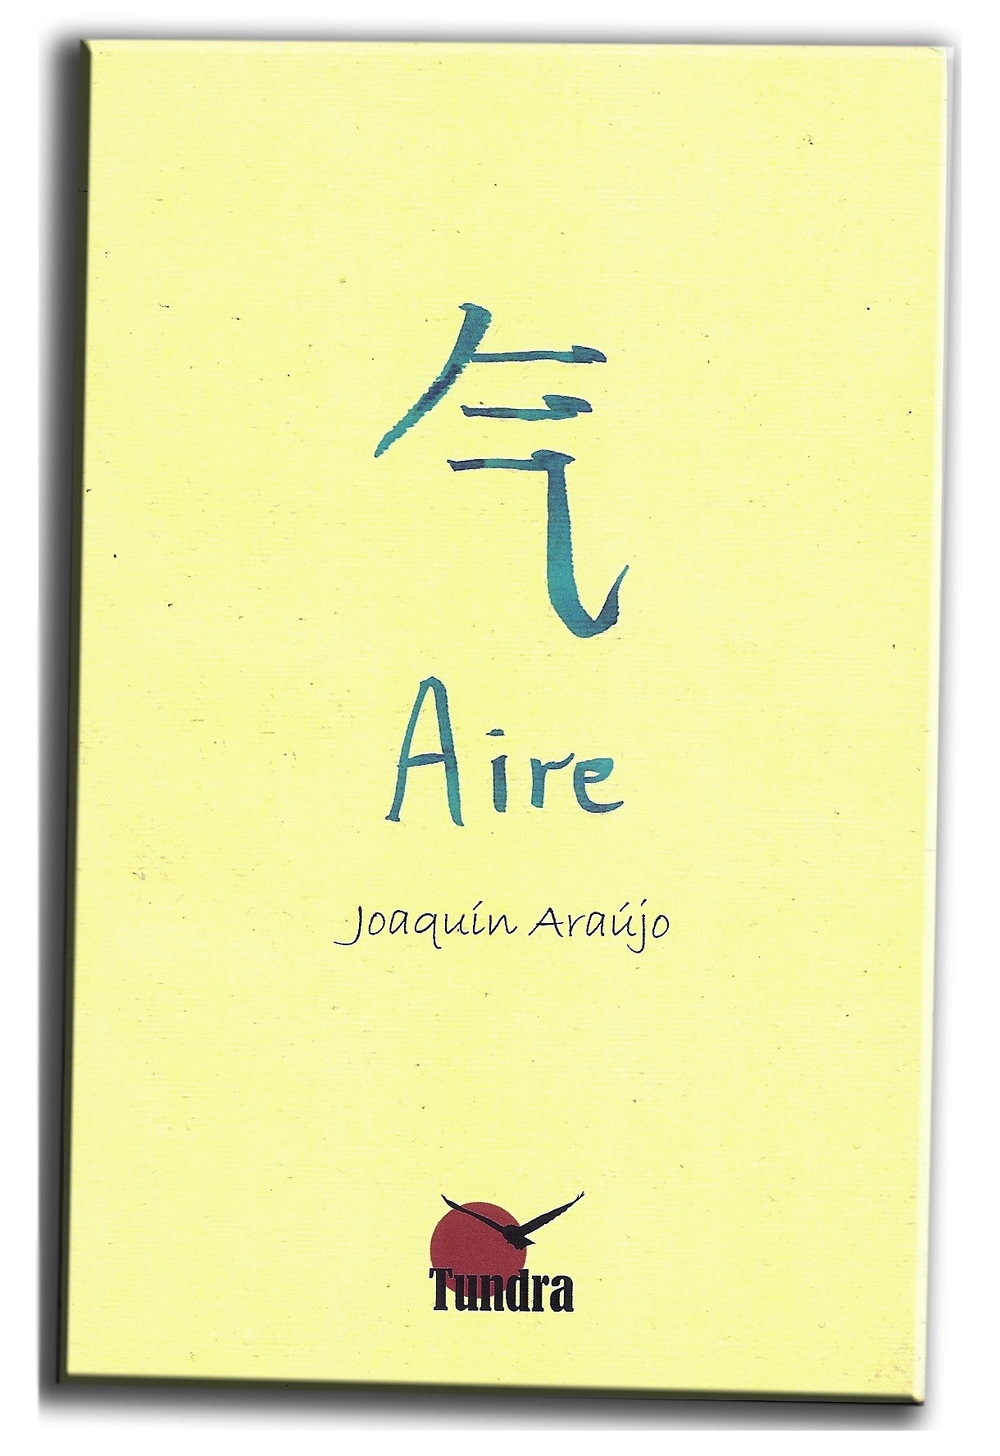 Portada del libro Aire, de Joaquín Araújo